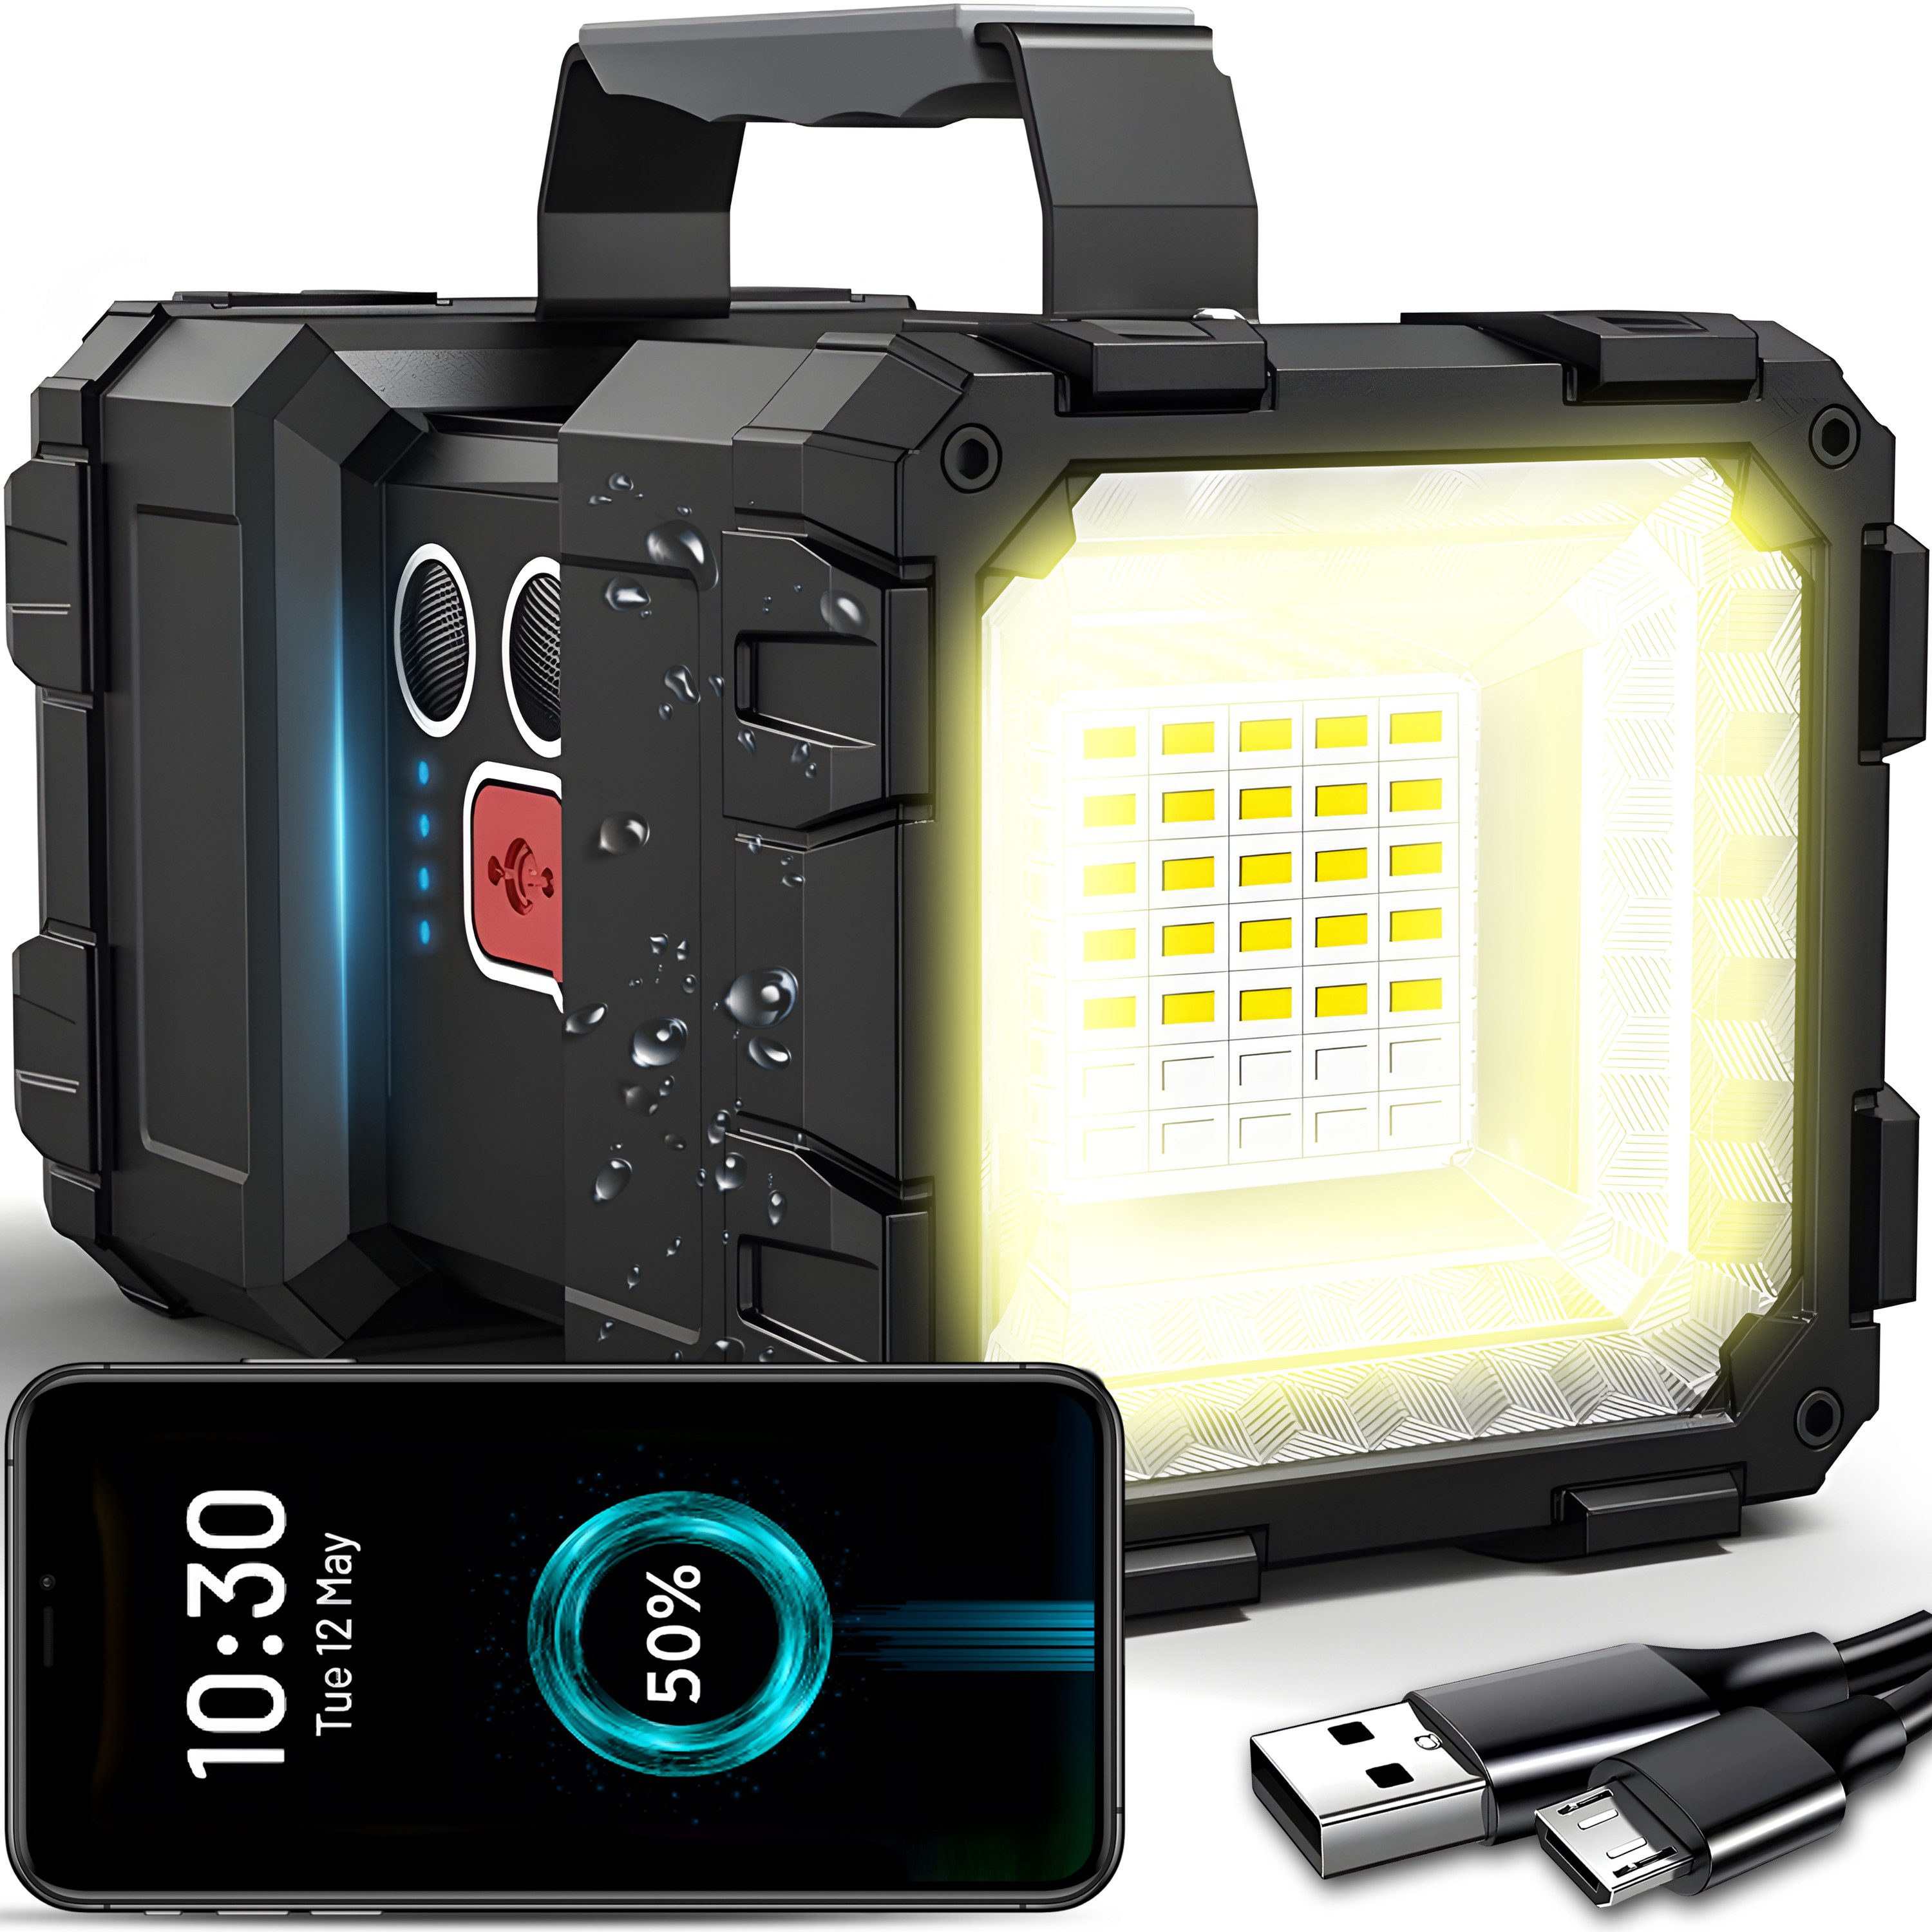 Retoo Taschenlampe Suchscheinwerfer LED Super Hell Wiederaufladbarer Taschenlampe Camping (Set, Suchscheinwerfer USB-Kabel Gebrauchsanweisung), Vielseitige Energieversorgung, Lange Lebensdauer